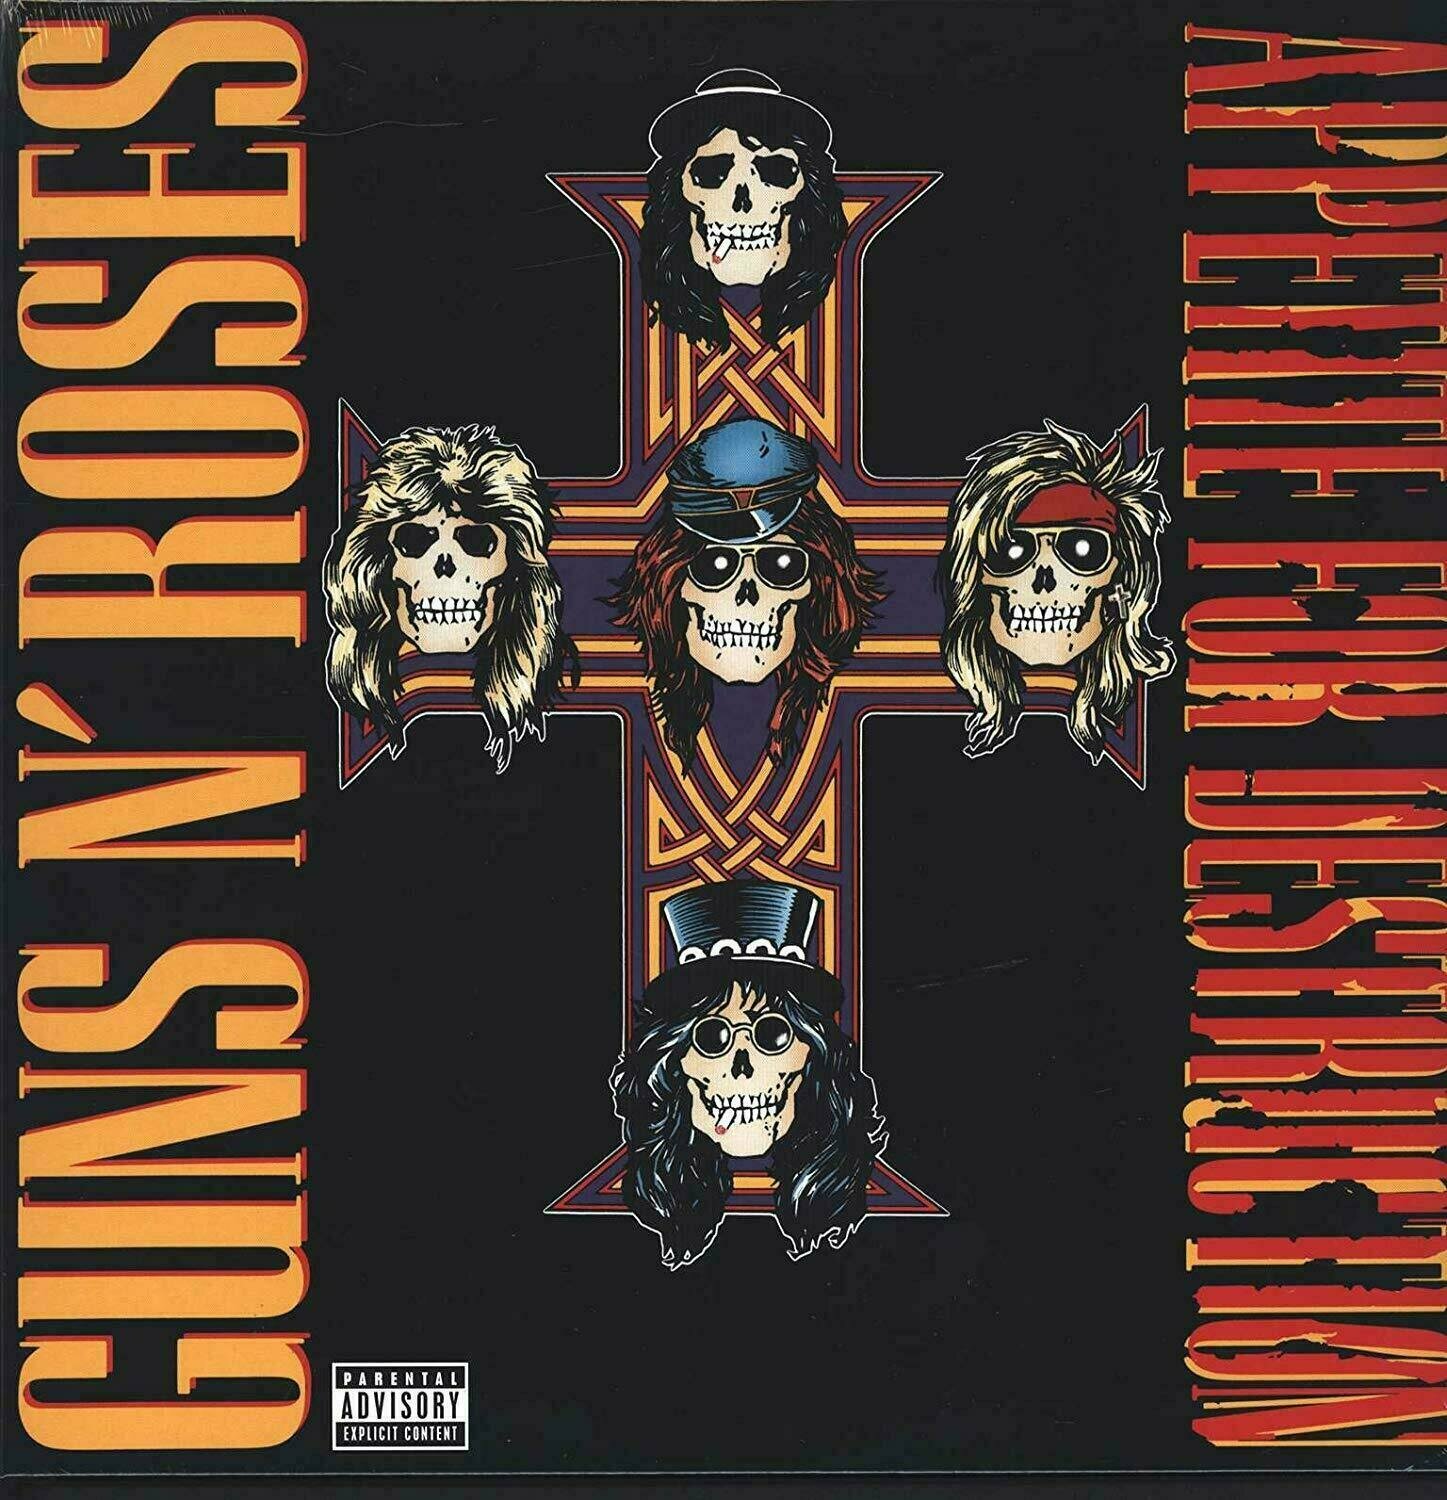 Schallplatte Guns N' Roses - Appetite For Destruction (LP)